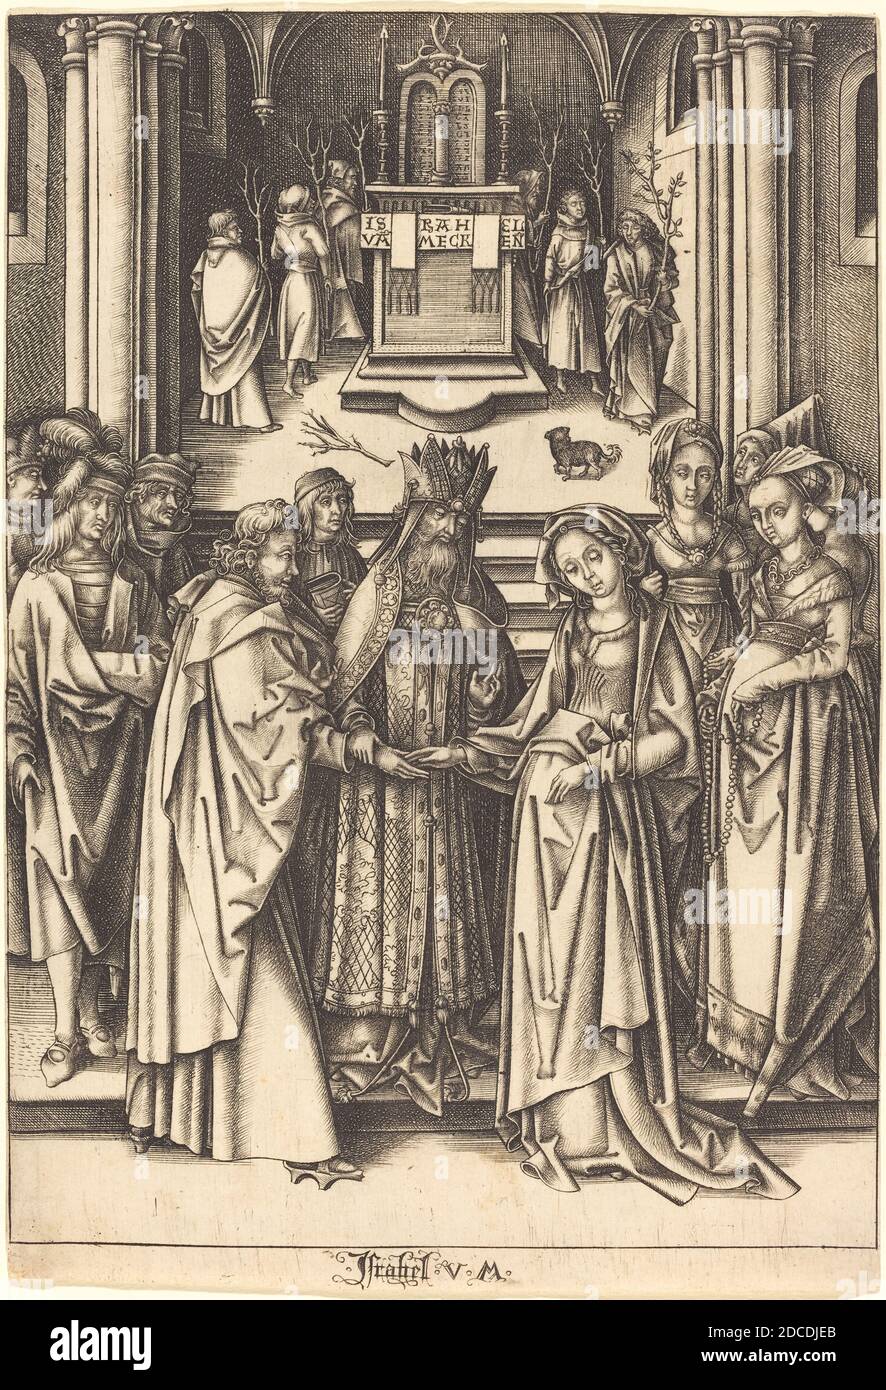 Israhel van Meckenem, (artist), German, c. 1445 - 1503, Hans Holbein the Elder, (artist after), German, c. 1465 - 1524, The Marriage of the Virgin, The Life of the Virgin, (series), c. 1490/1500, engraving Stock Photo